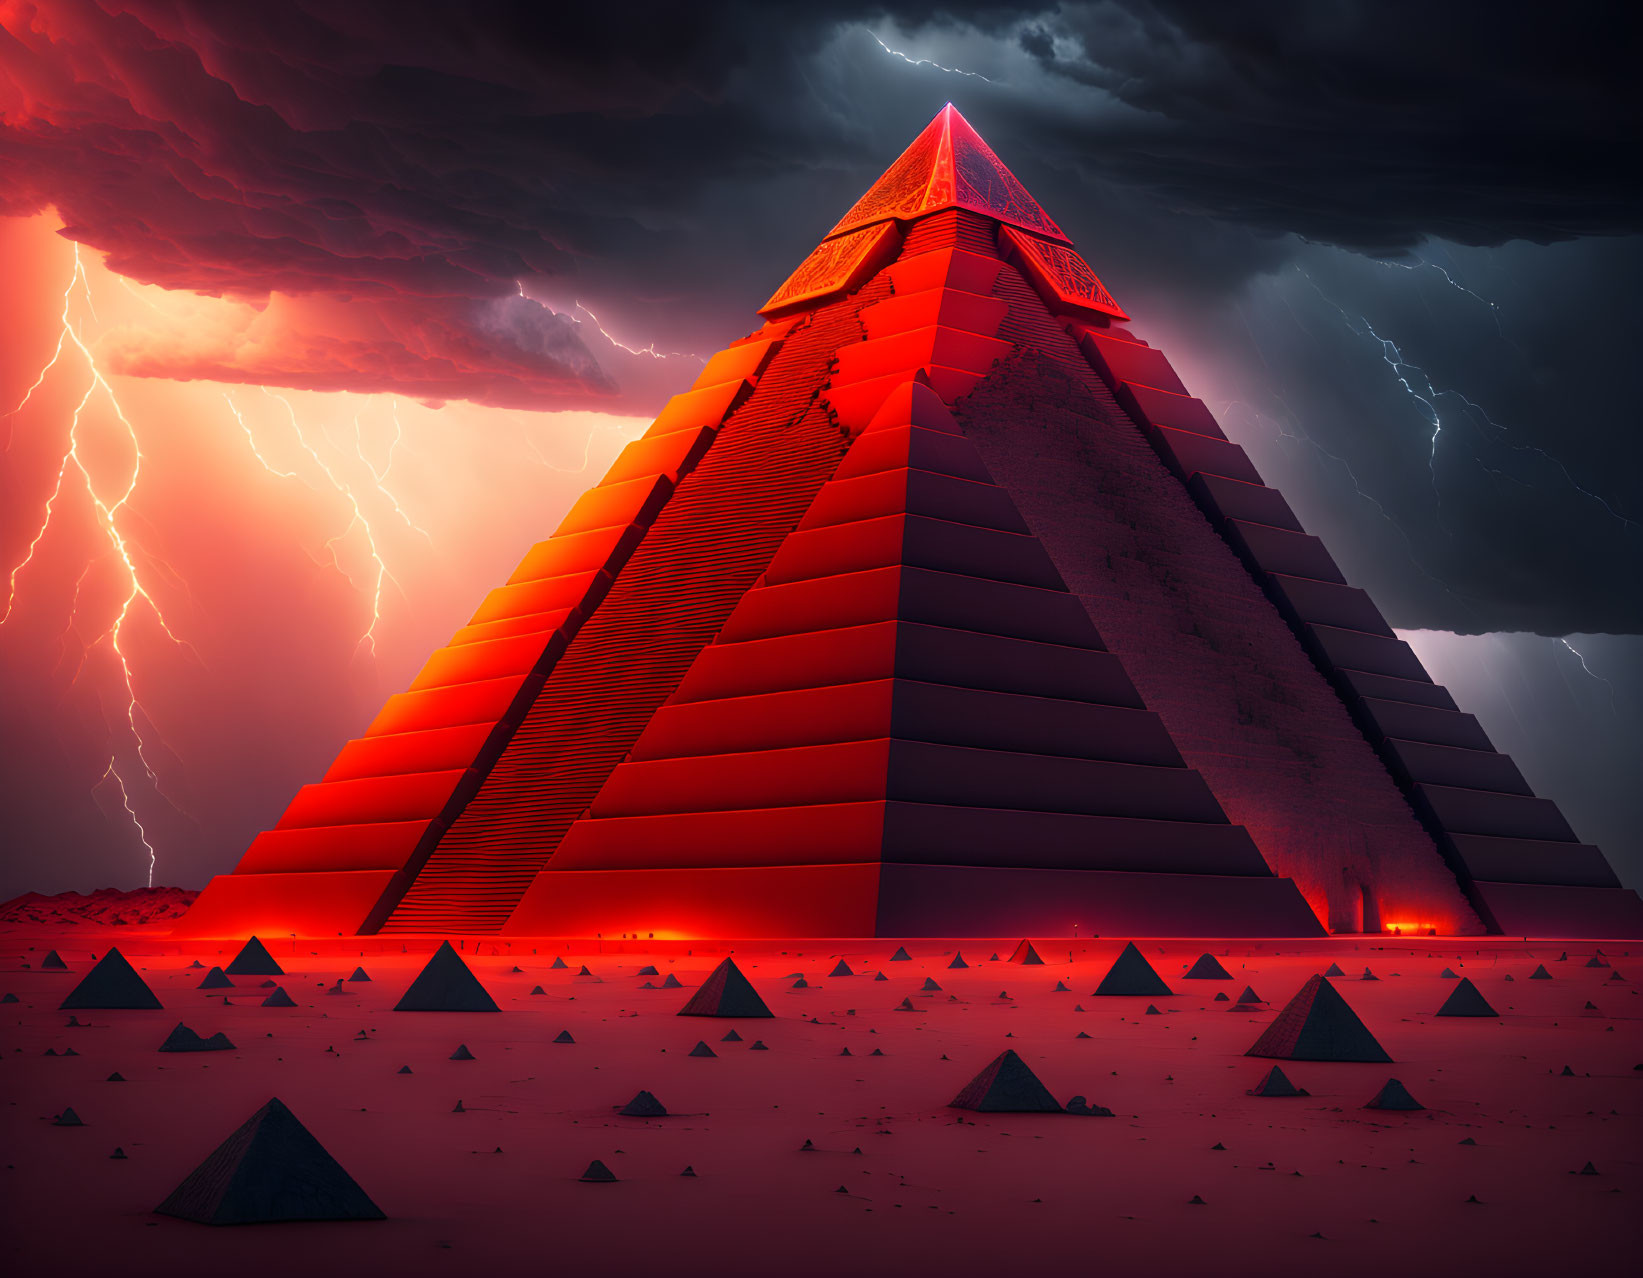 big-sized pyramid among mini pyramids.